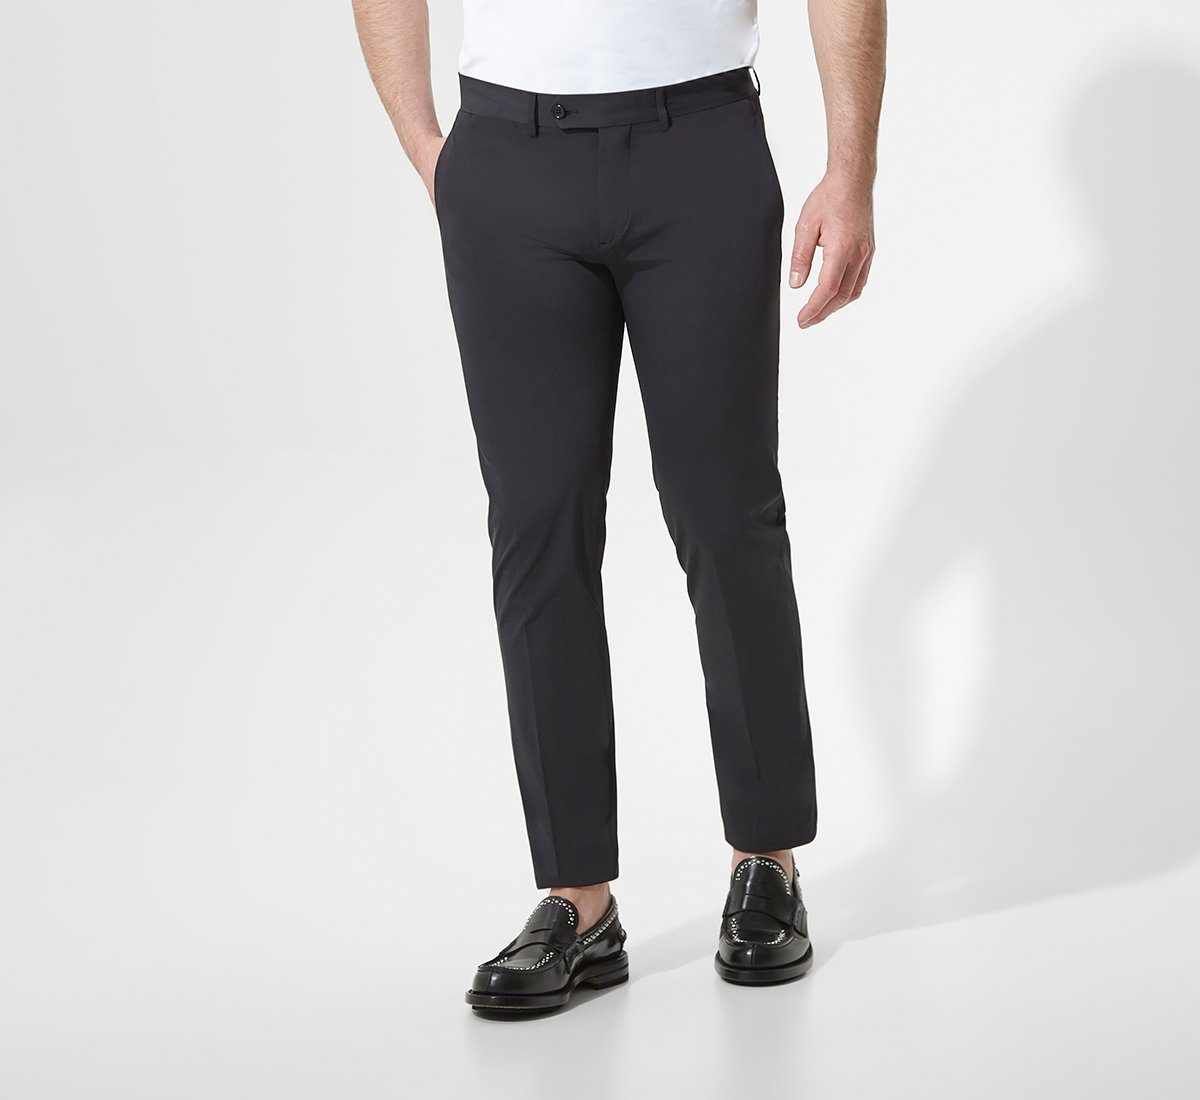 Black regular fit trousers